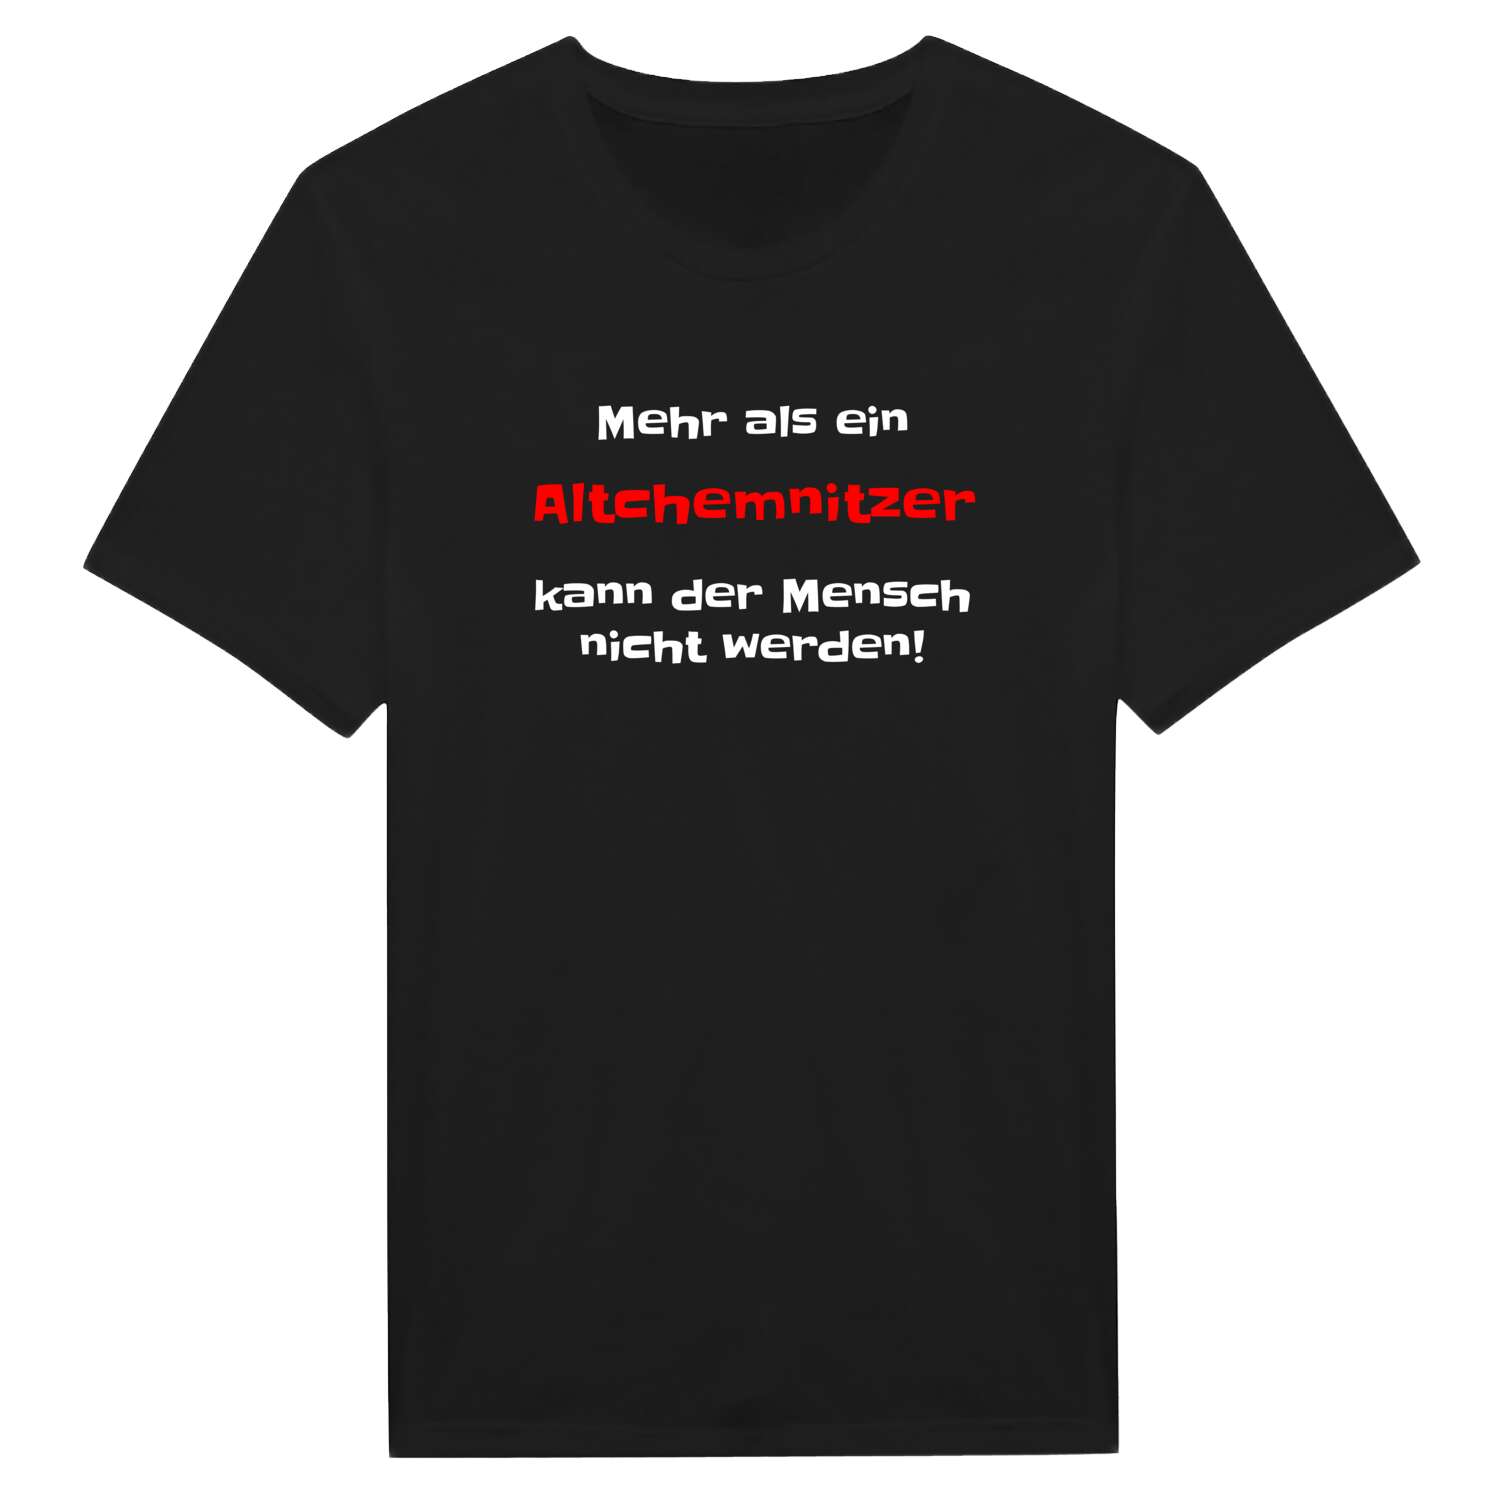 Altchemnitz T-Shirt »Mehr als ein«